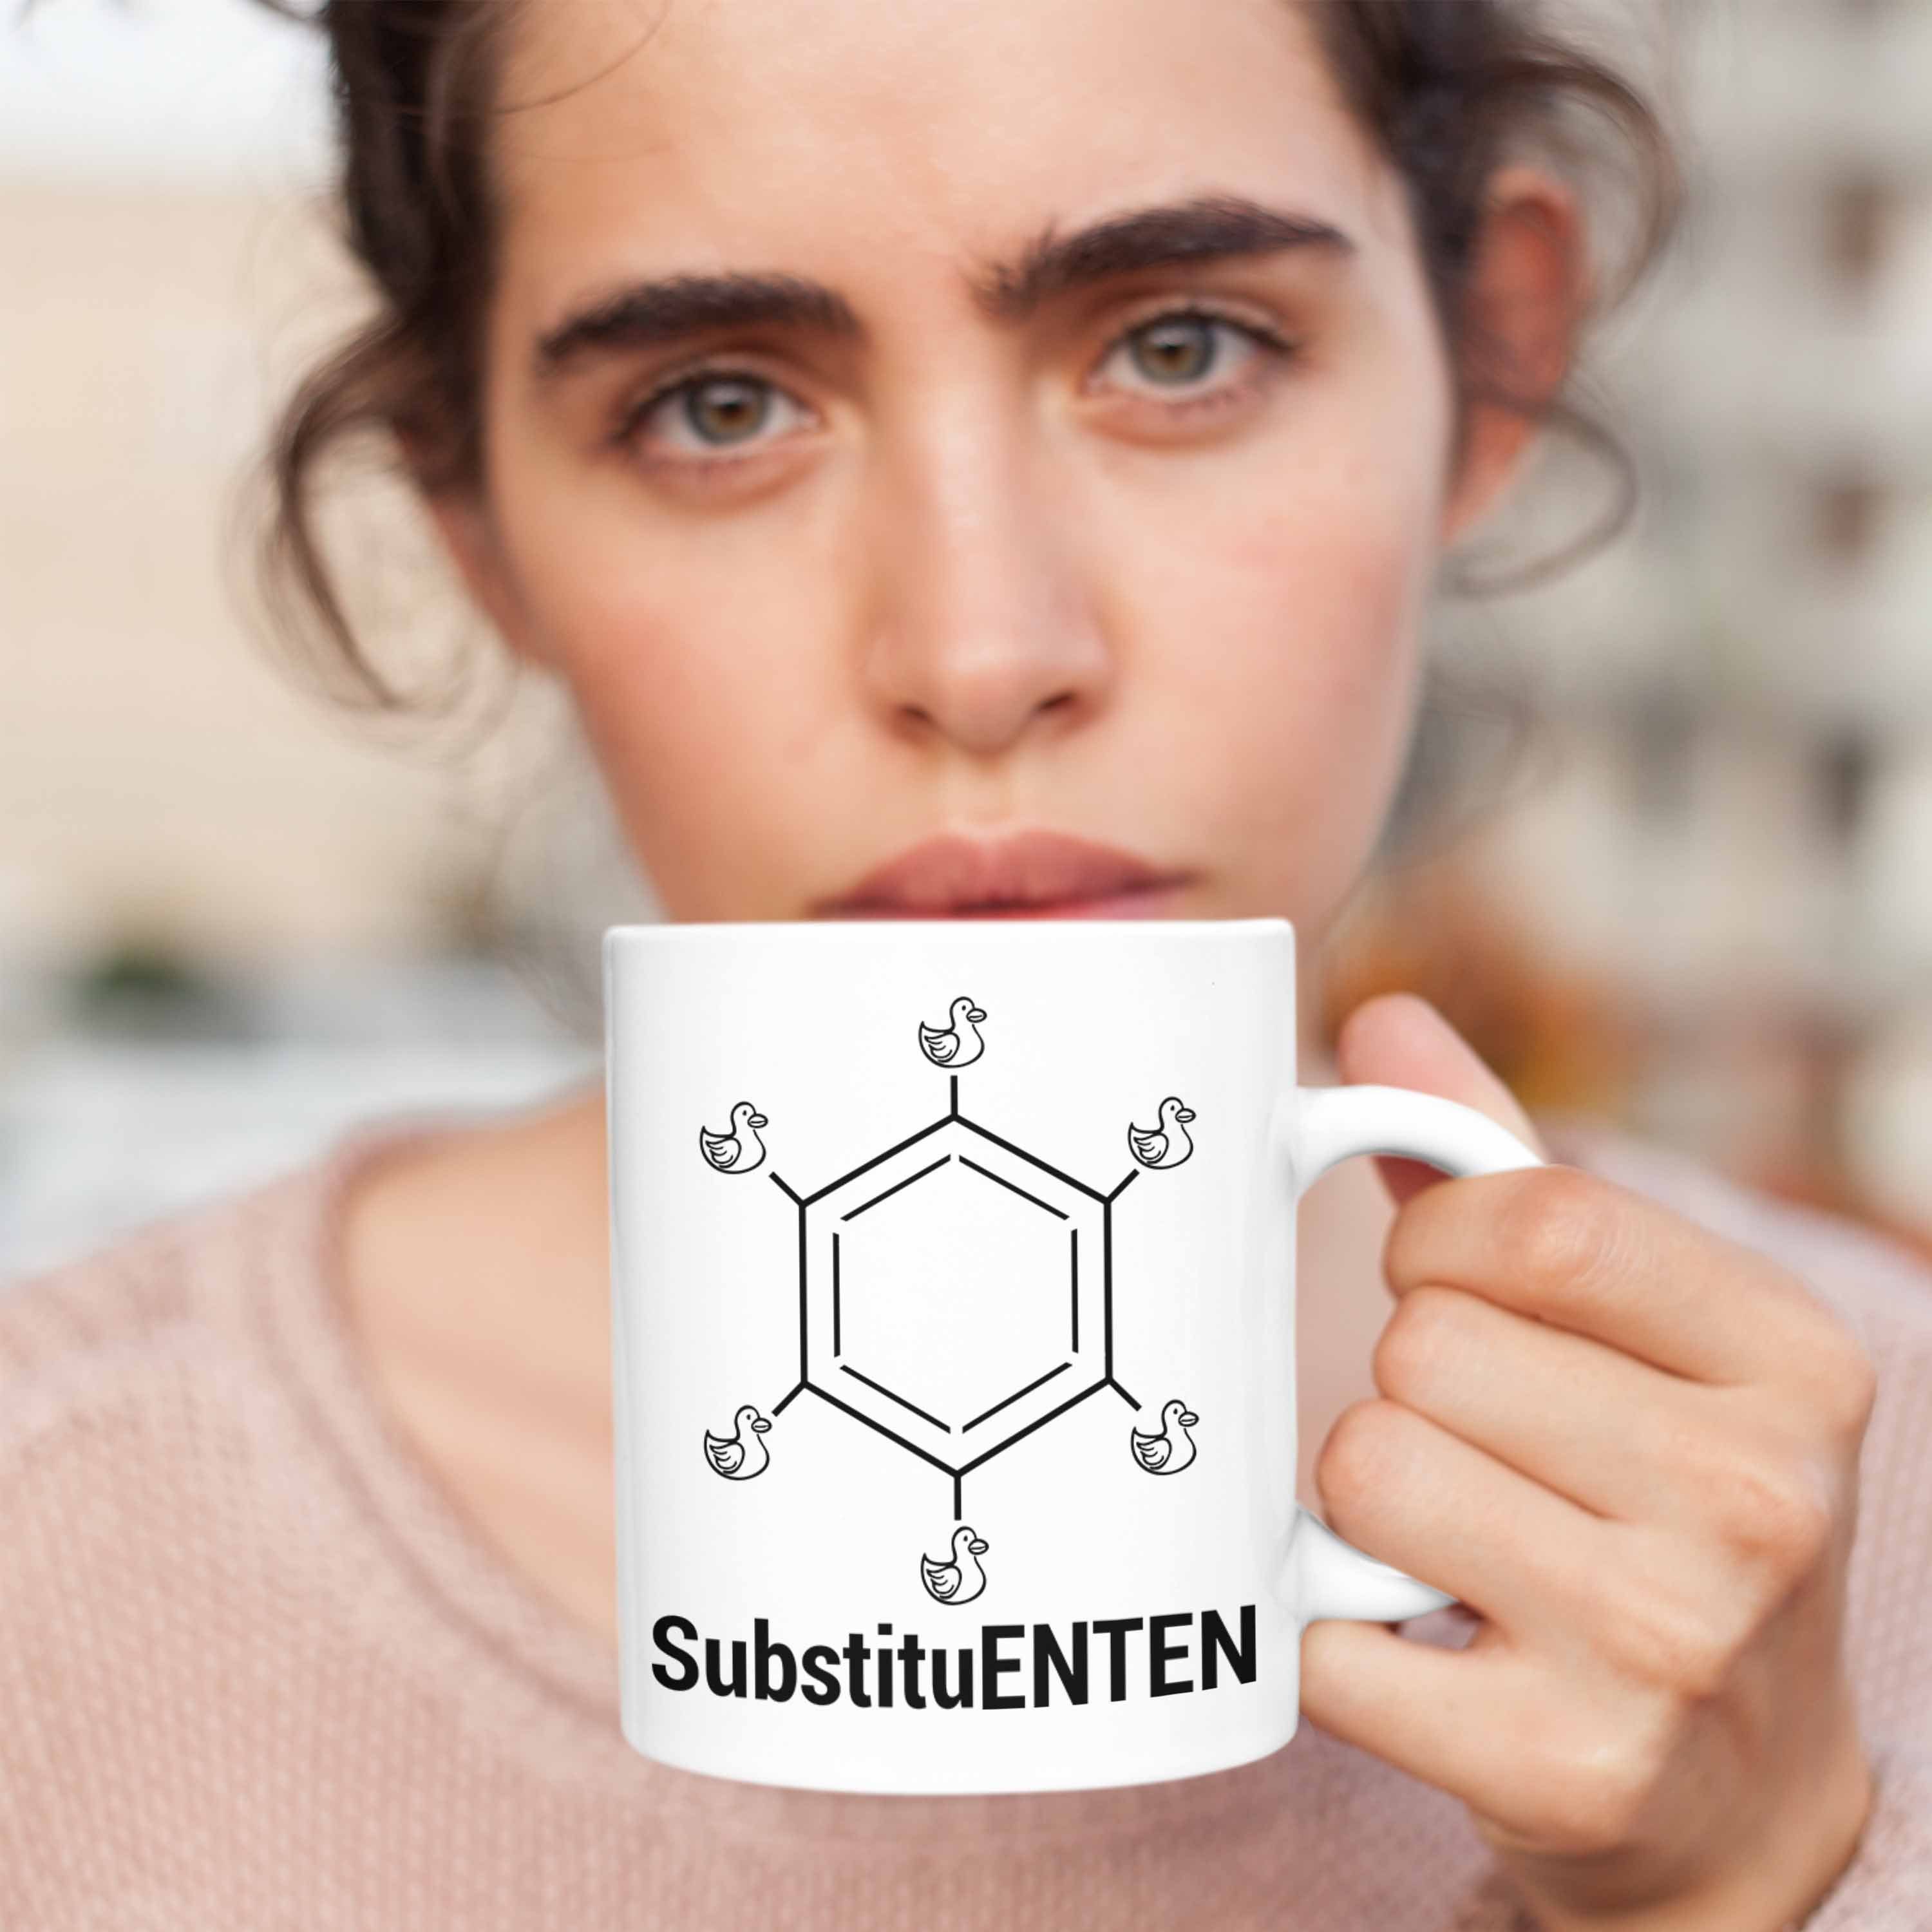 Tasse Chemie SubstituENTEN Organische Chemiker Trendation Ente Chemie Witz Weiss Tasse Kaffee